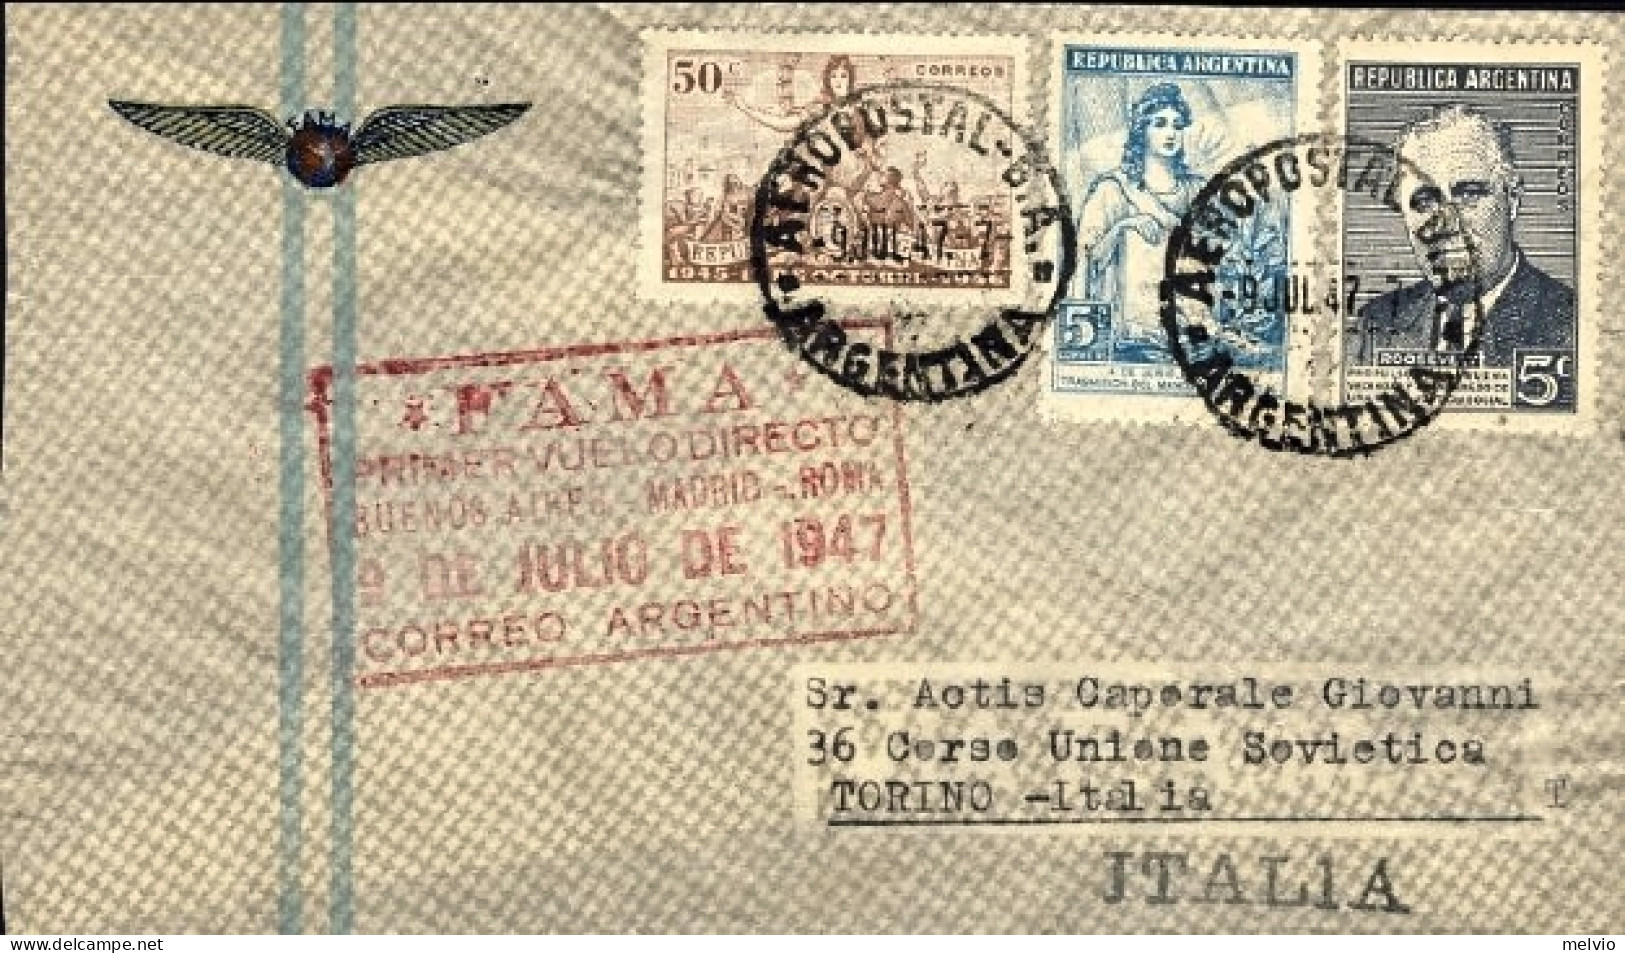 1947-Argentina I^volo Diretto Senza Scalo Per L'Europa F.A.M.A.  Buenos Aires Ro - Poste Aérienne